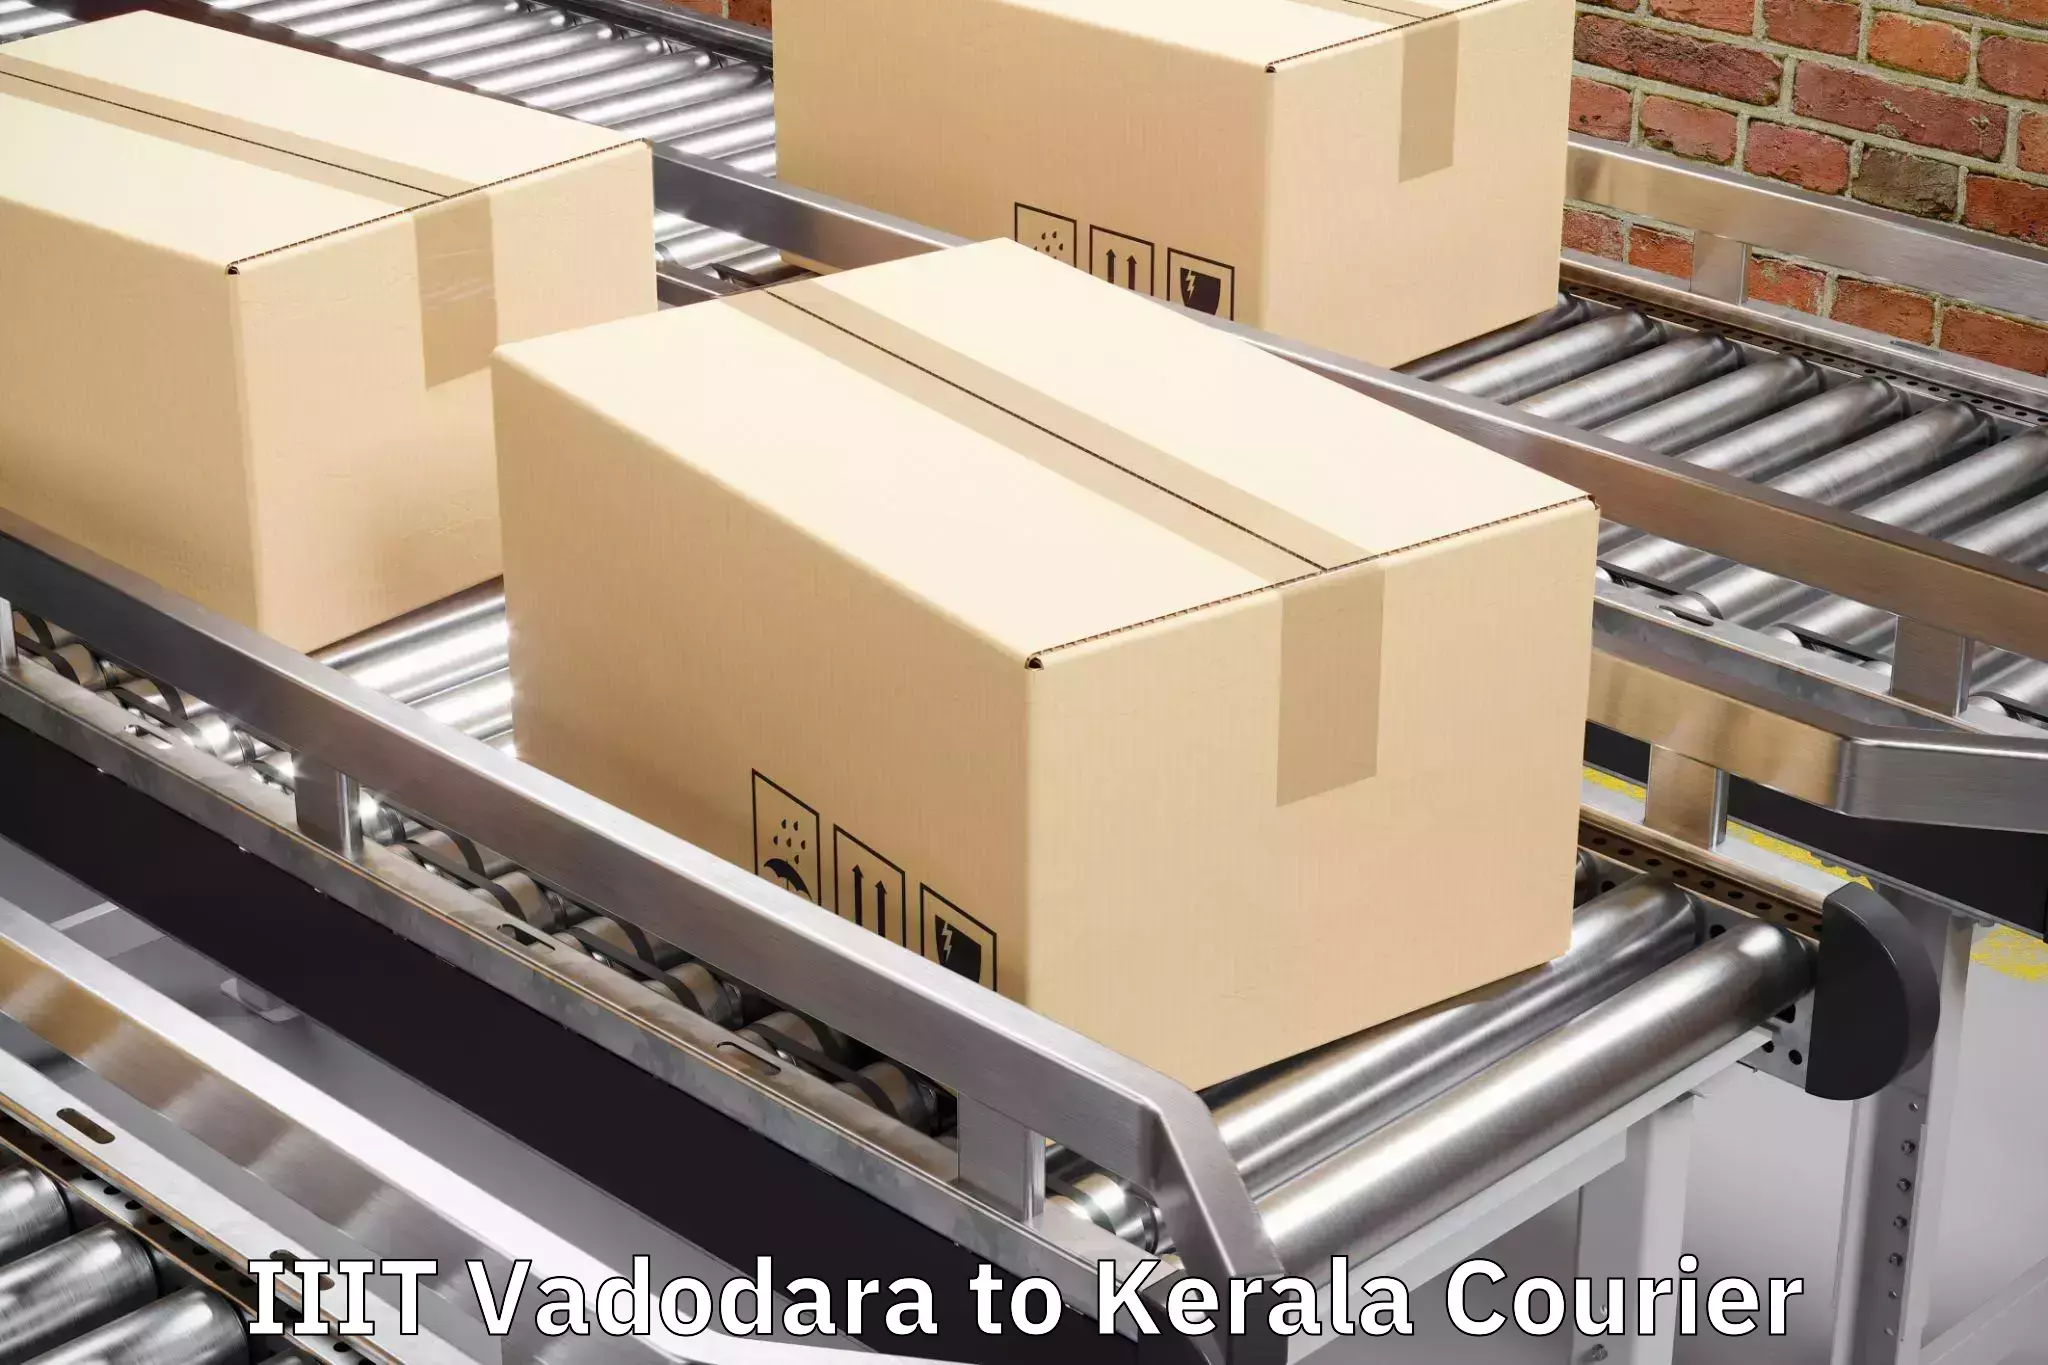 Luggage delivery operations in IIIT Vadodara to Mundakayam